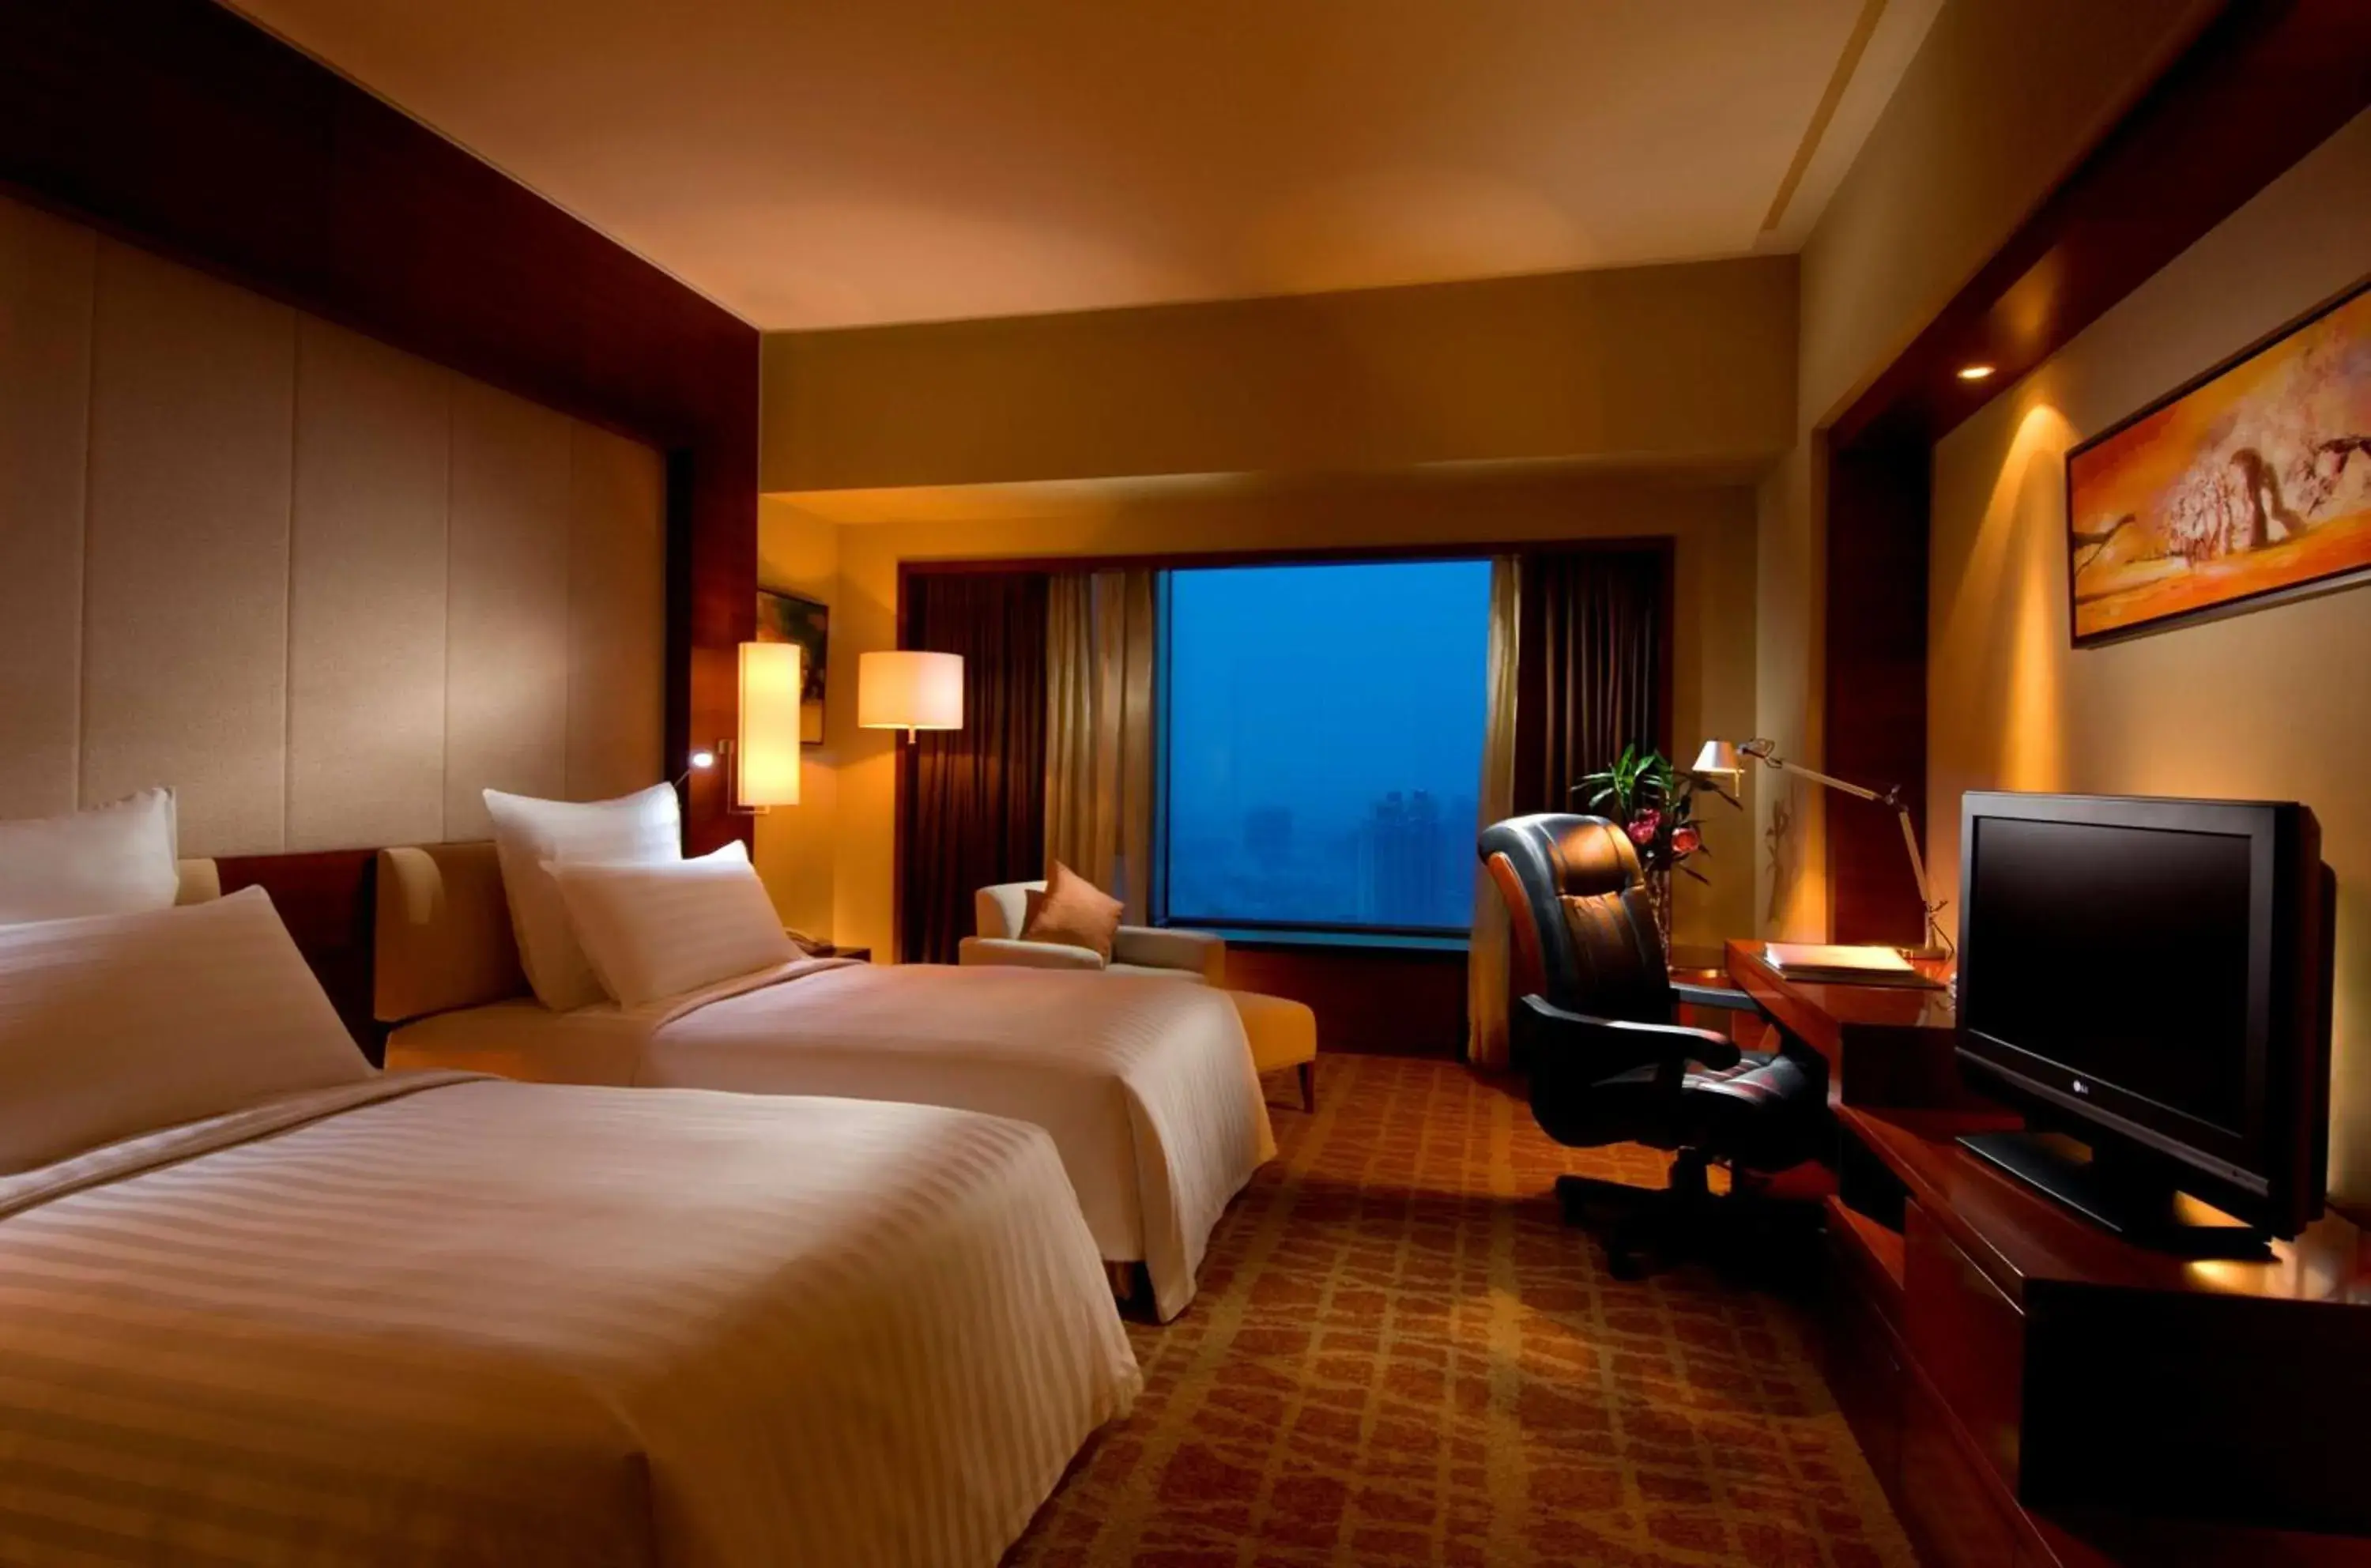 Bedroom in Hilton Hefei